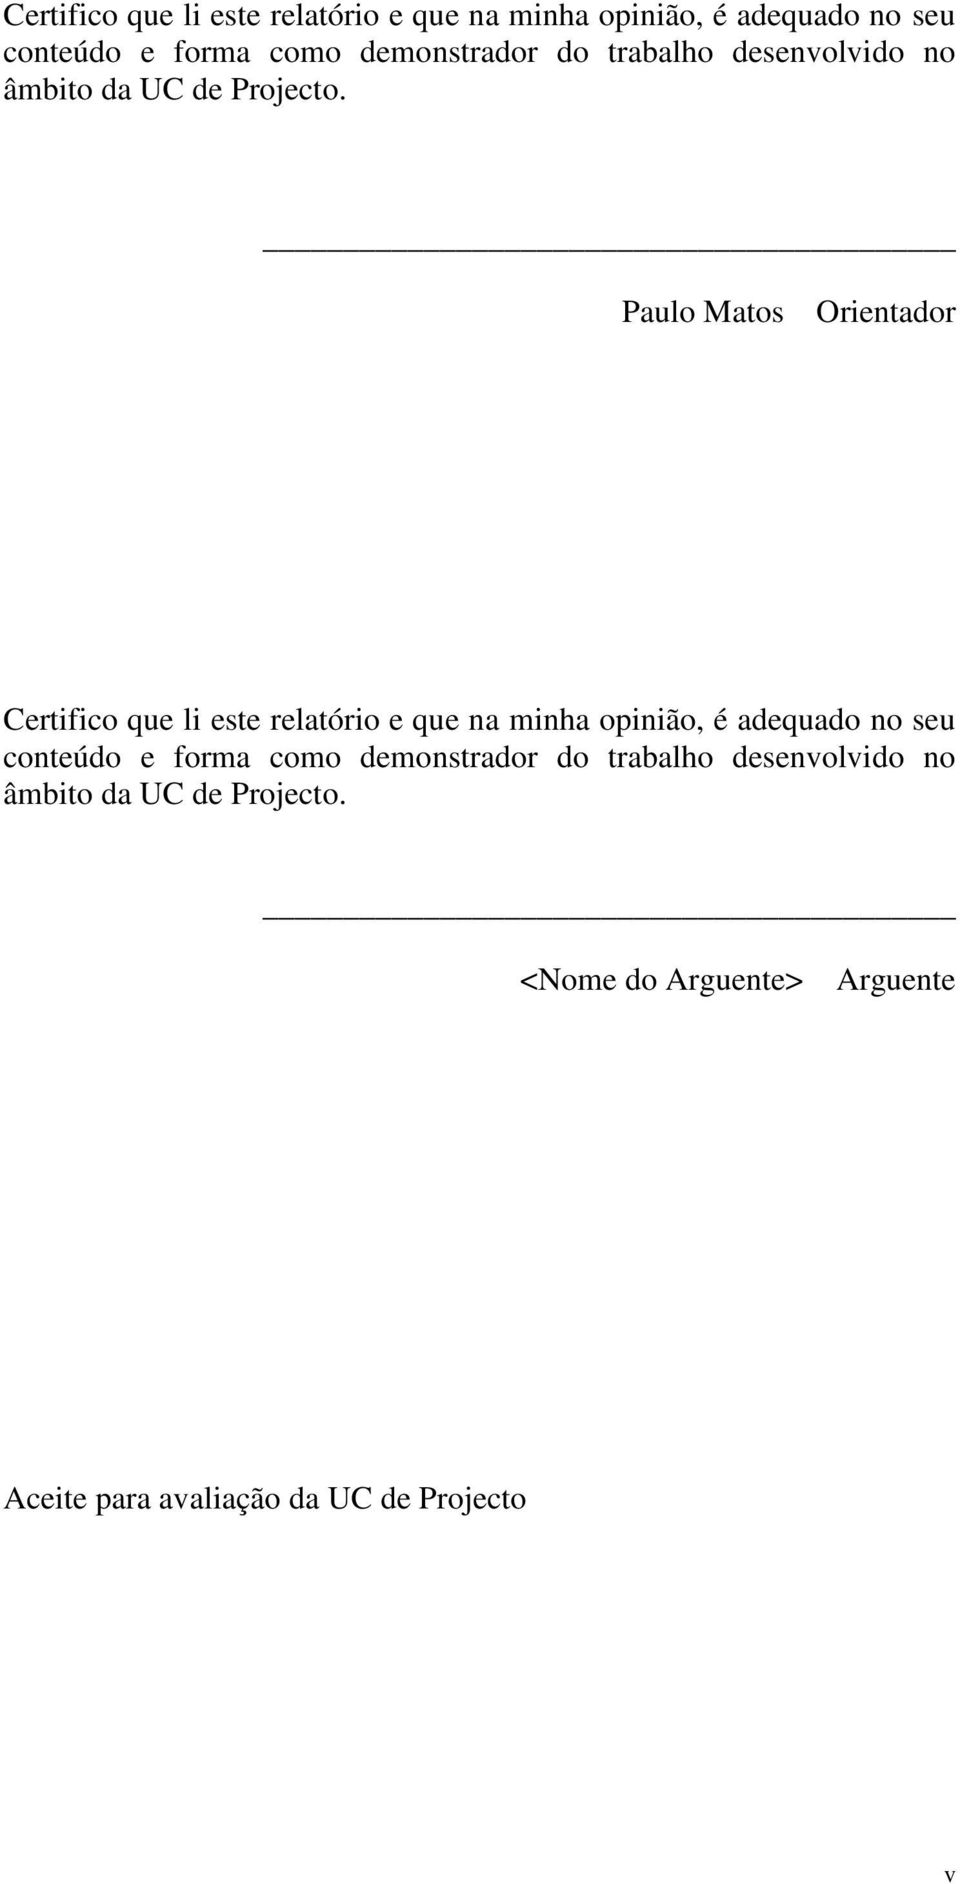 Paulo Matos Orientador   <Nome do Arguente> Arguente Aceite para avaliação da UC de Projecto v